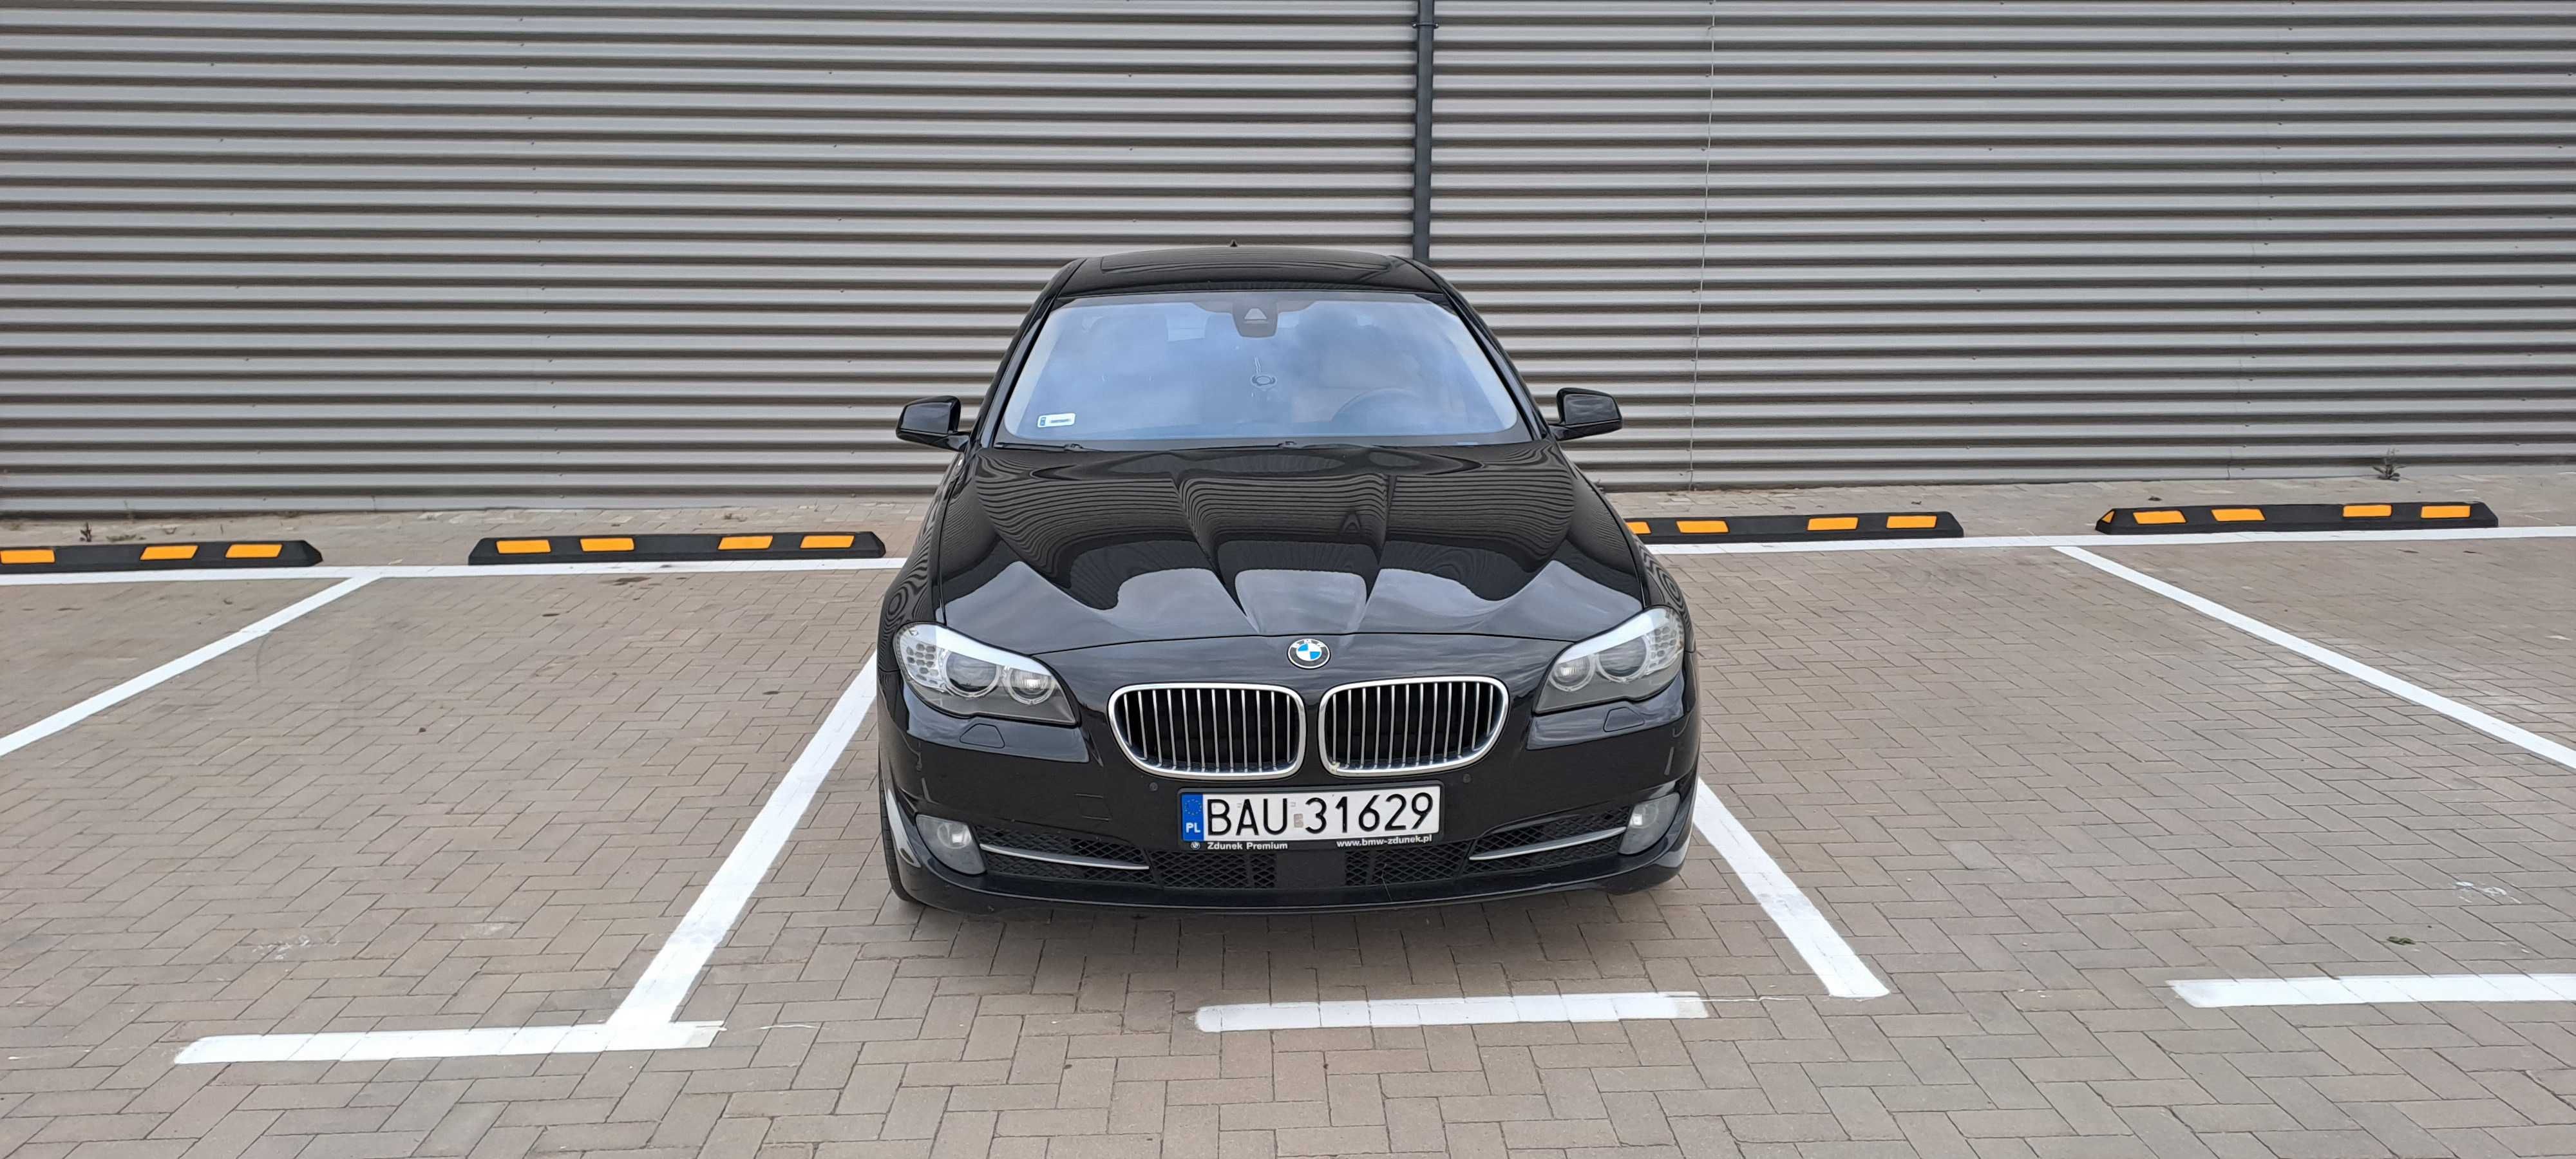 BMW F10 535d xdrive 313km komforty po wymianie rozrządu dociągi